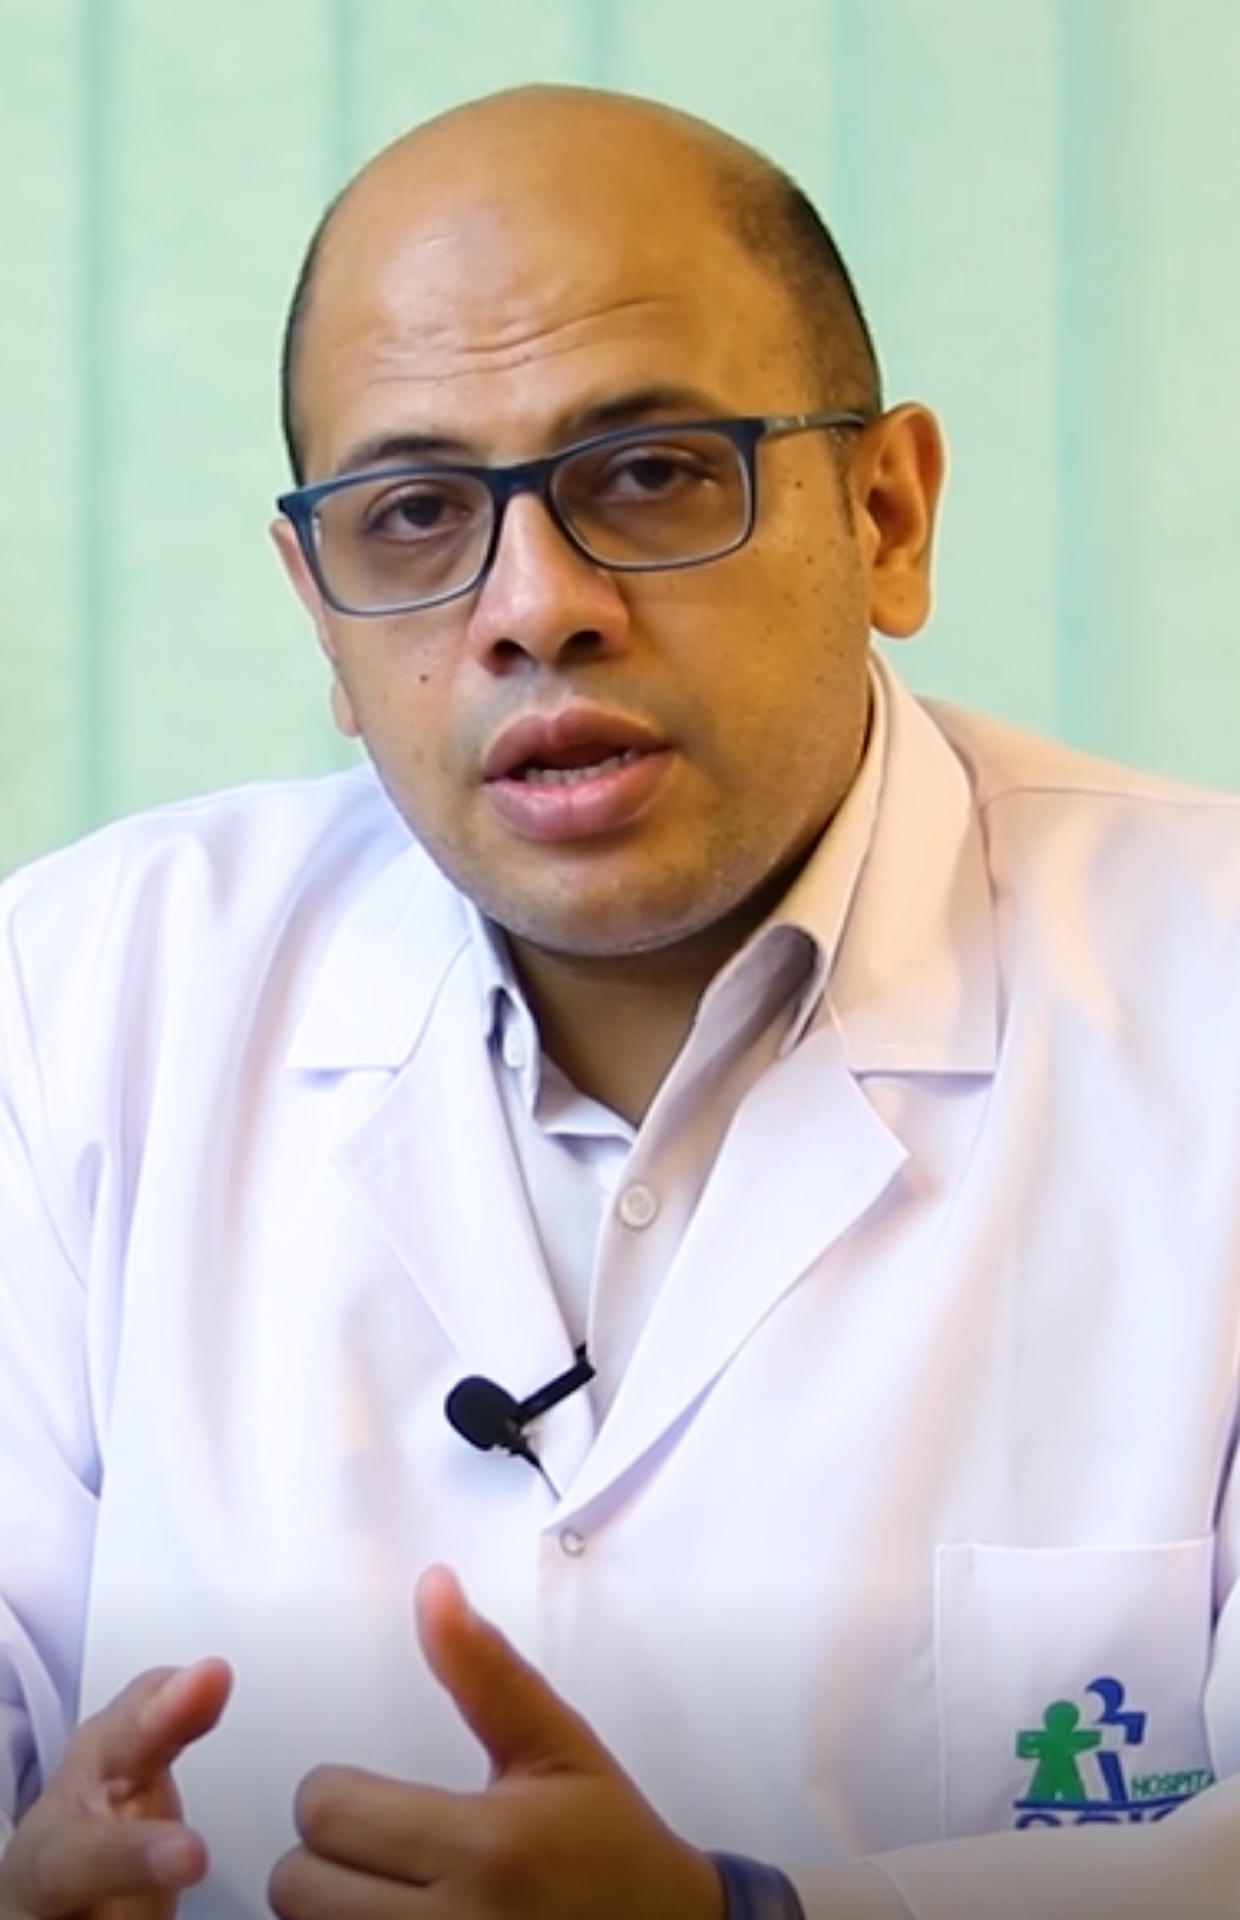 Doctor Mohamed Abd El-Malak